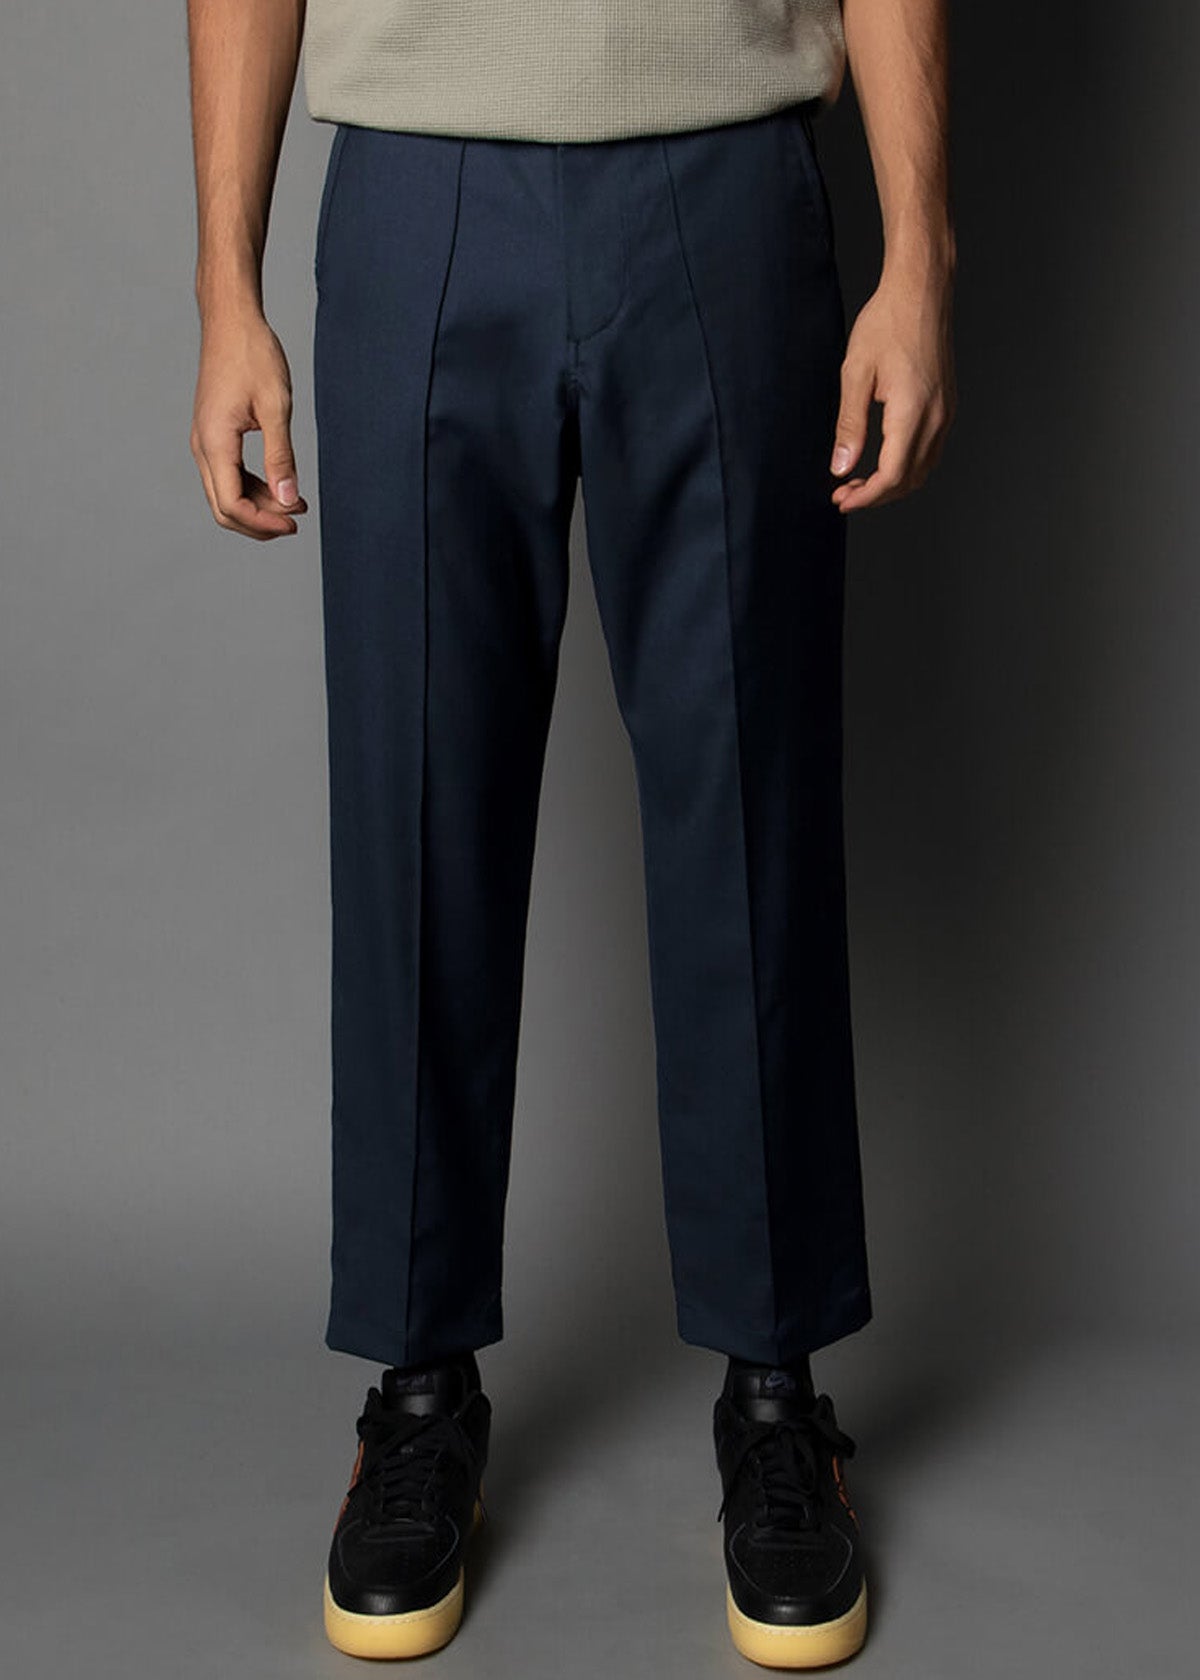 navy blue mens pants boxer fit